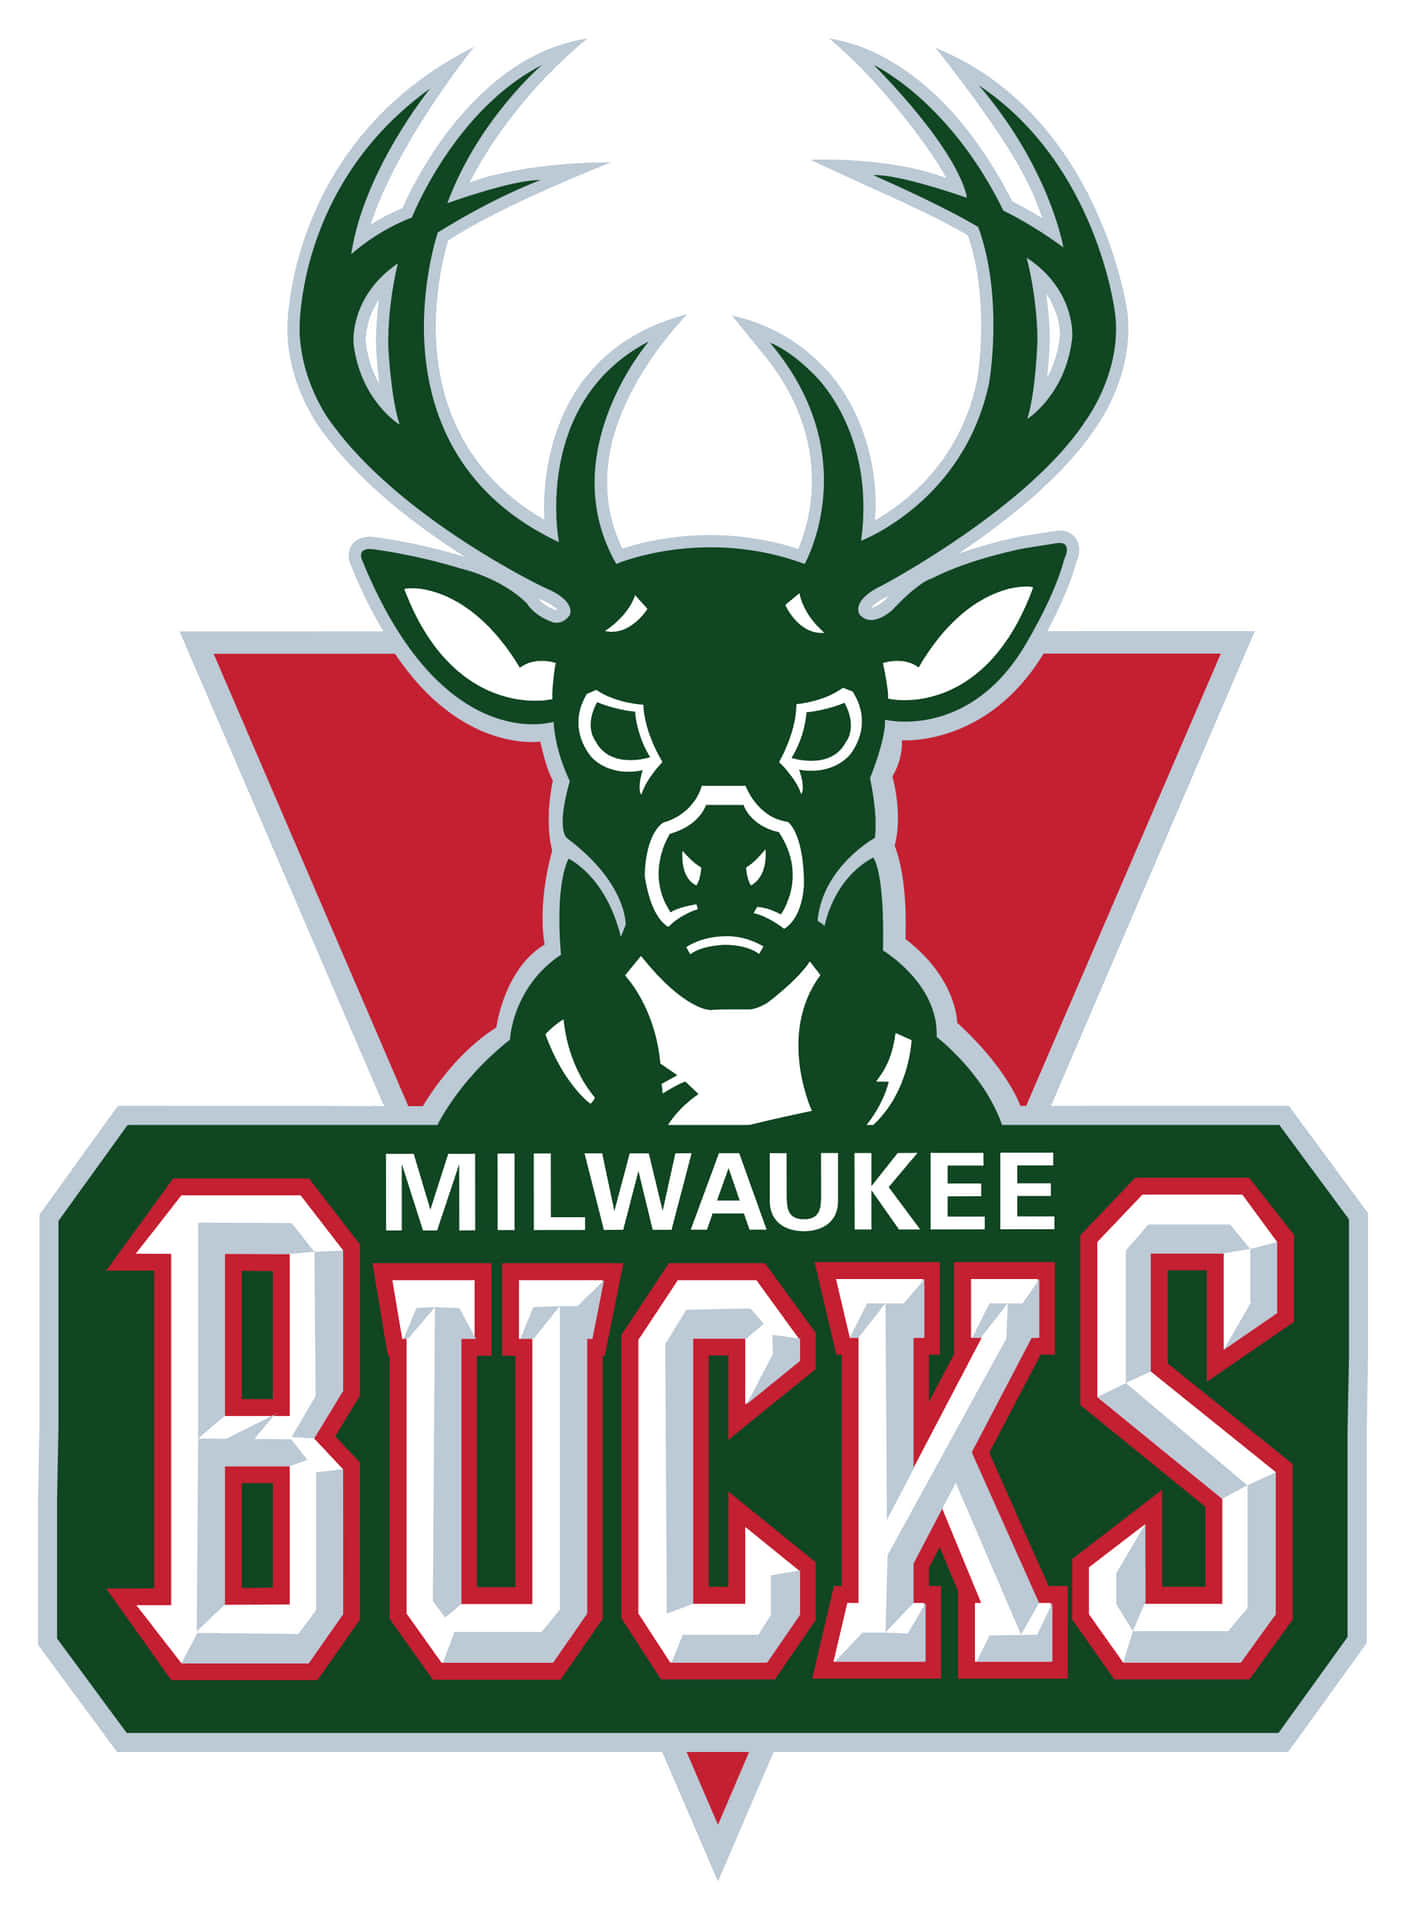 Milwaukeebucks Officiella Logotypen. Wallpaper